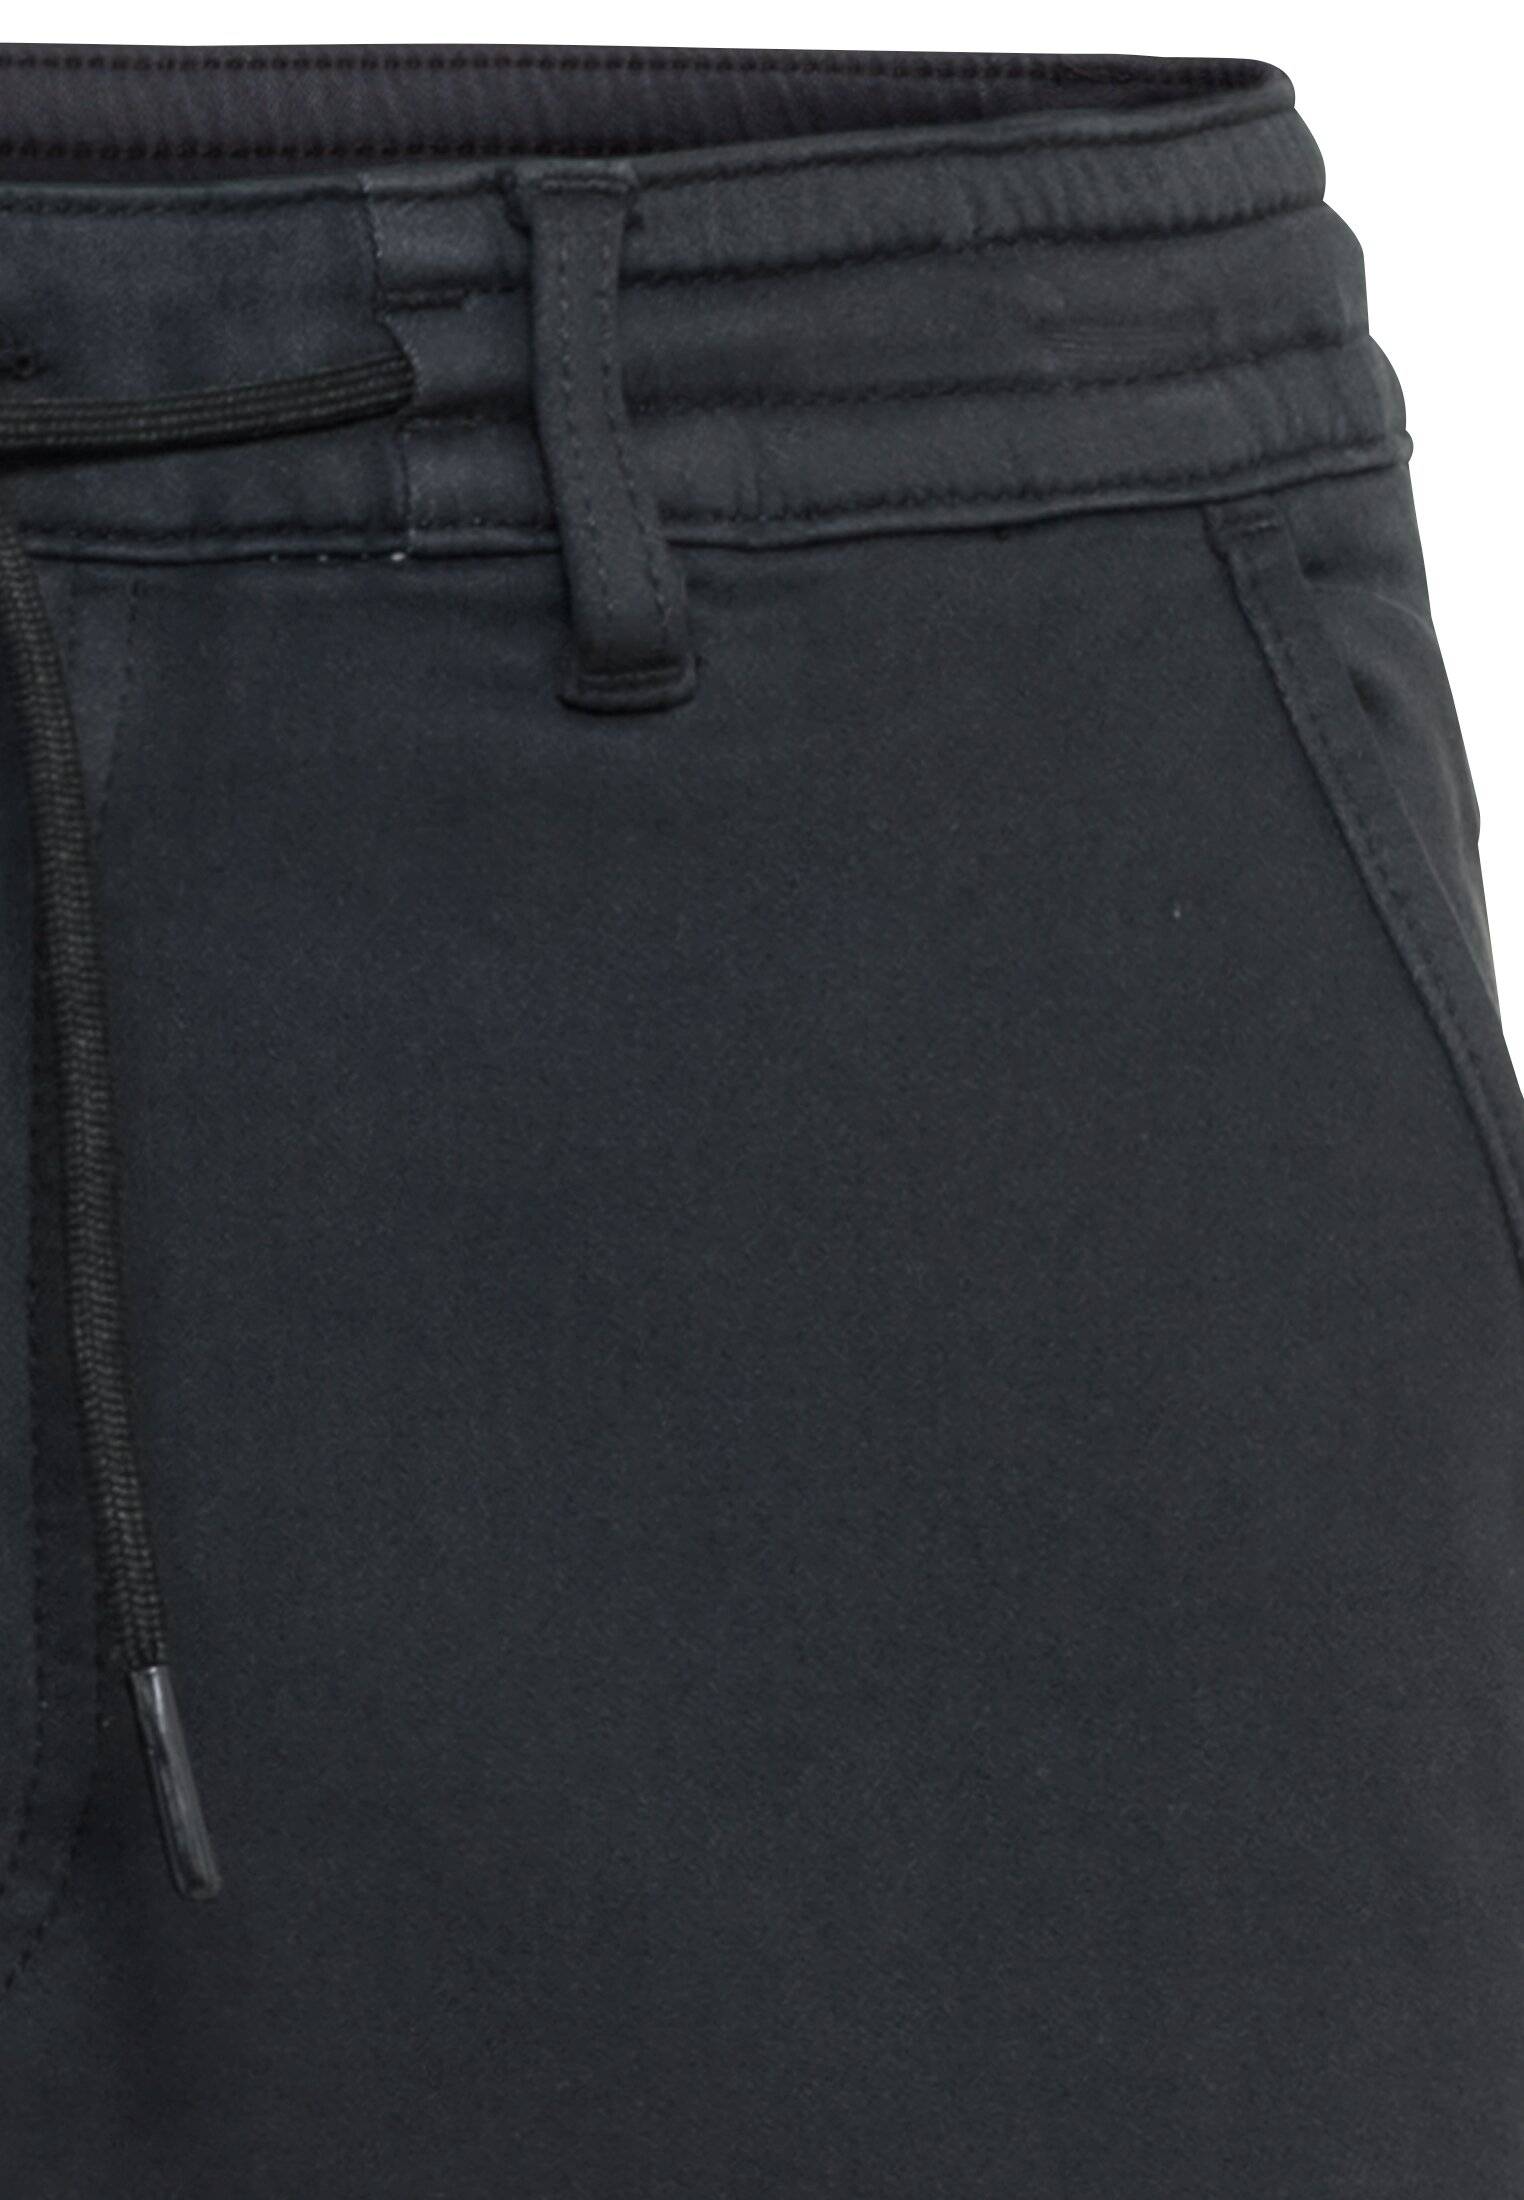 Мужские брюки Camel Active, серые, цвет серый, размер 36 - фото 3